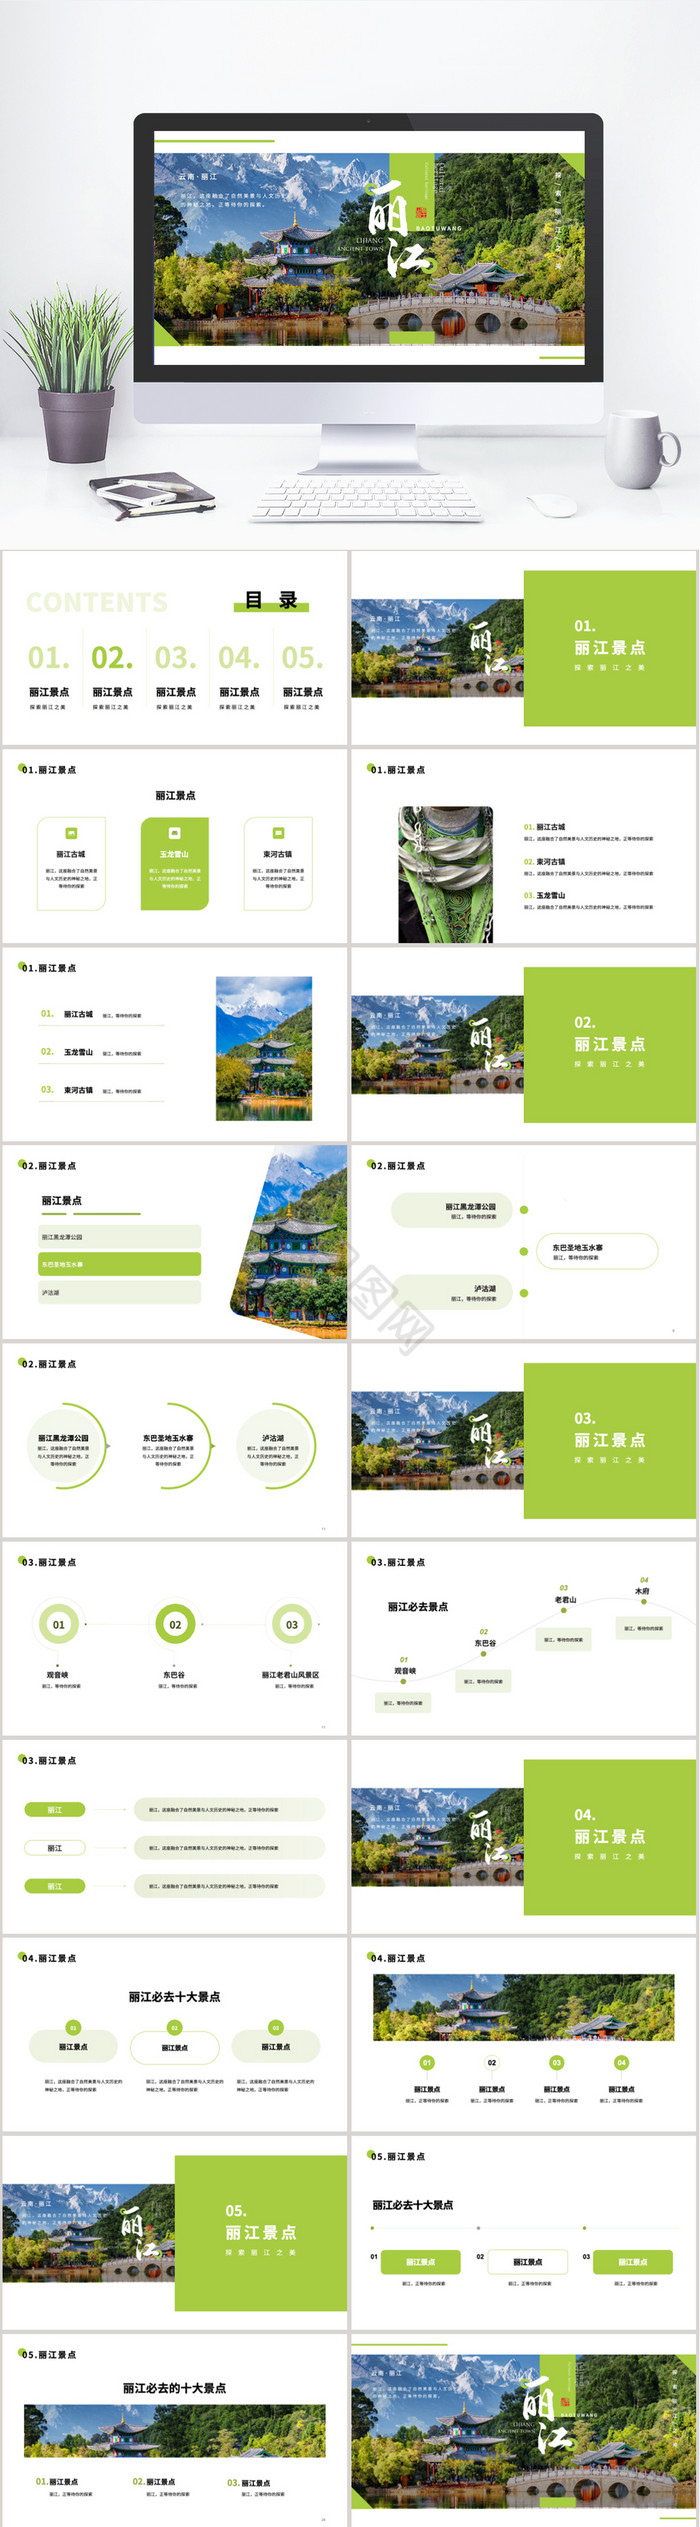 绿色丽江旅游景点介绍PPT模板